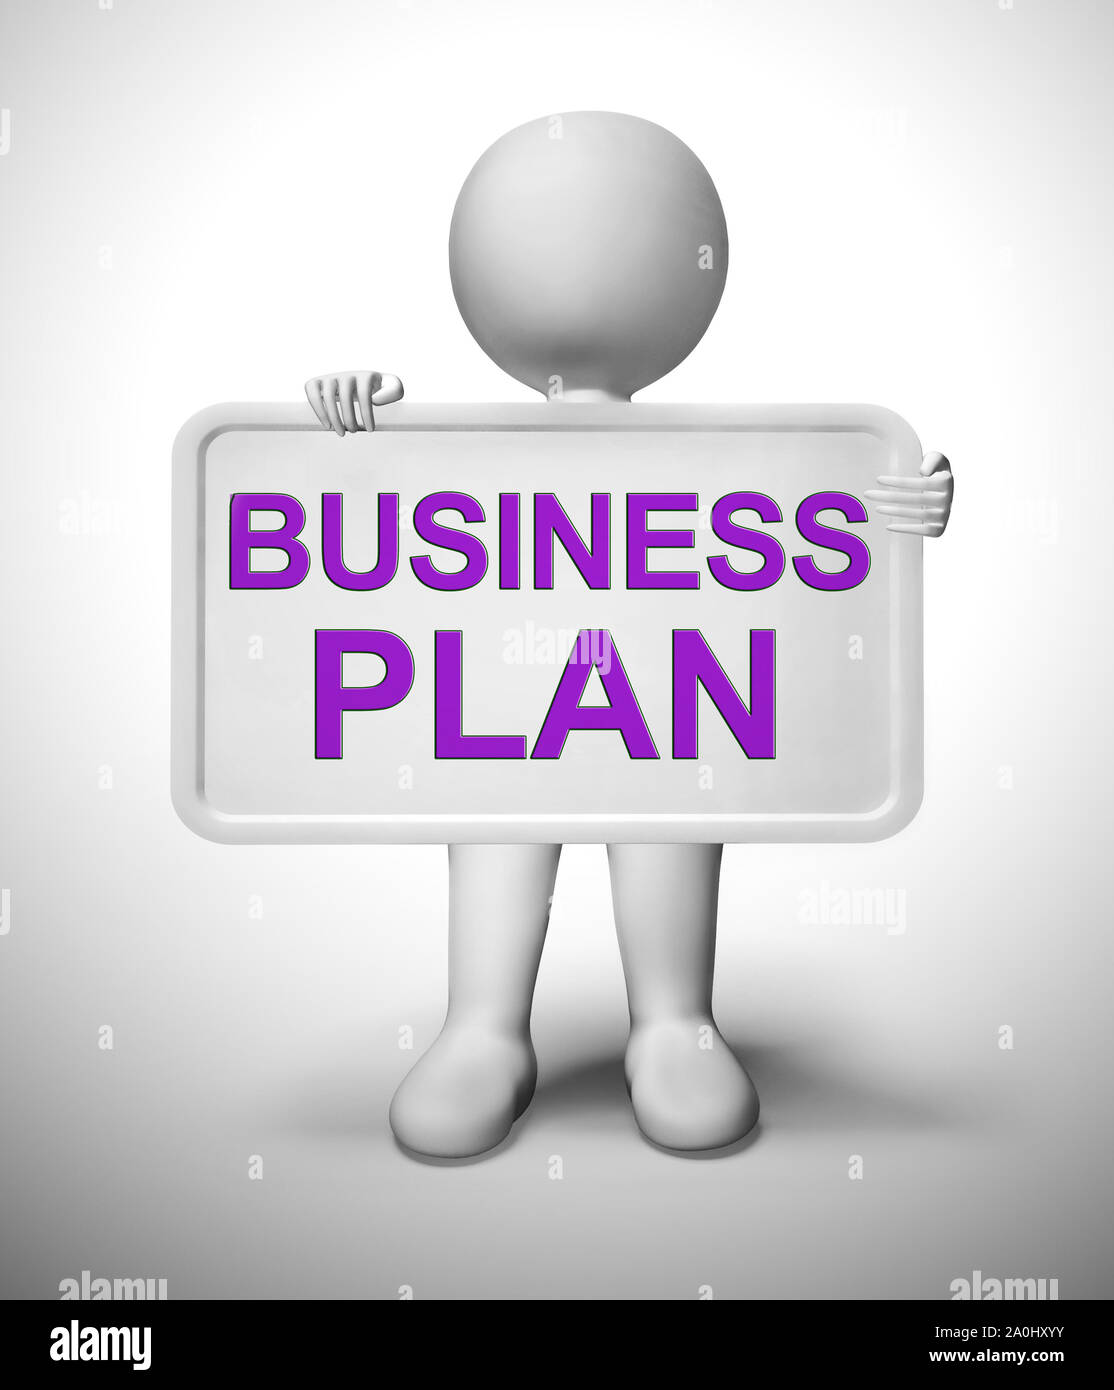 Plan d'affaires ou la planification est importante pour la croissance de l'entreprise. Une stratégie avec prévoyance pour la prospérité et la réussite - 3d illustration Banque D'Images